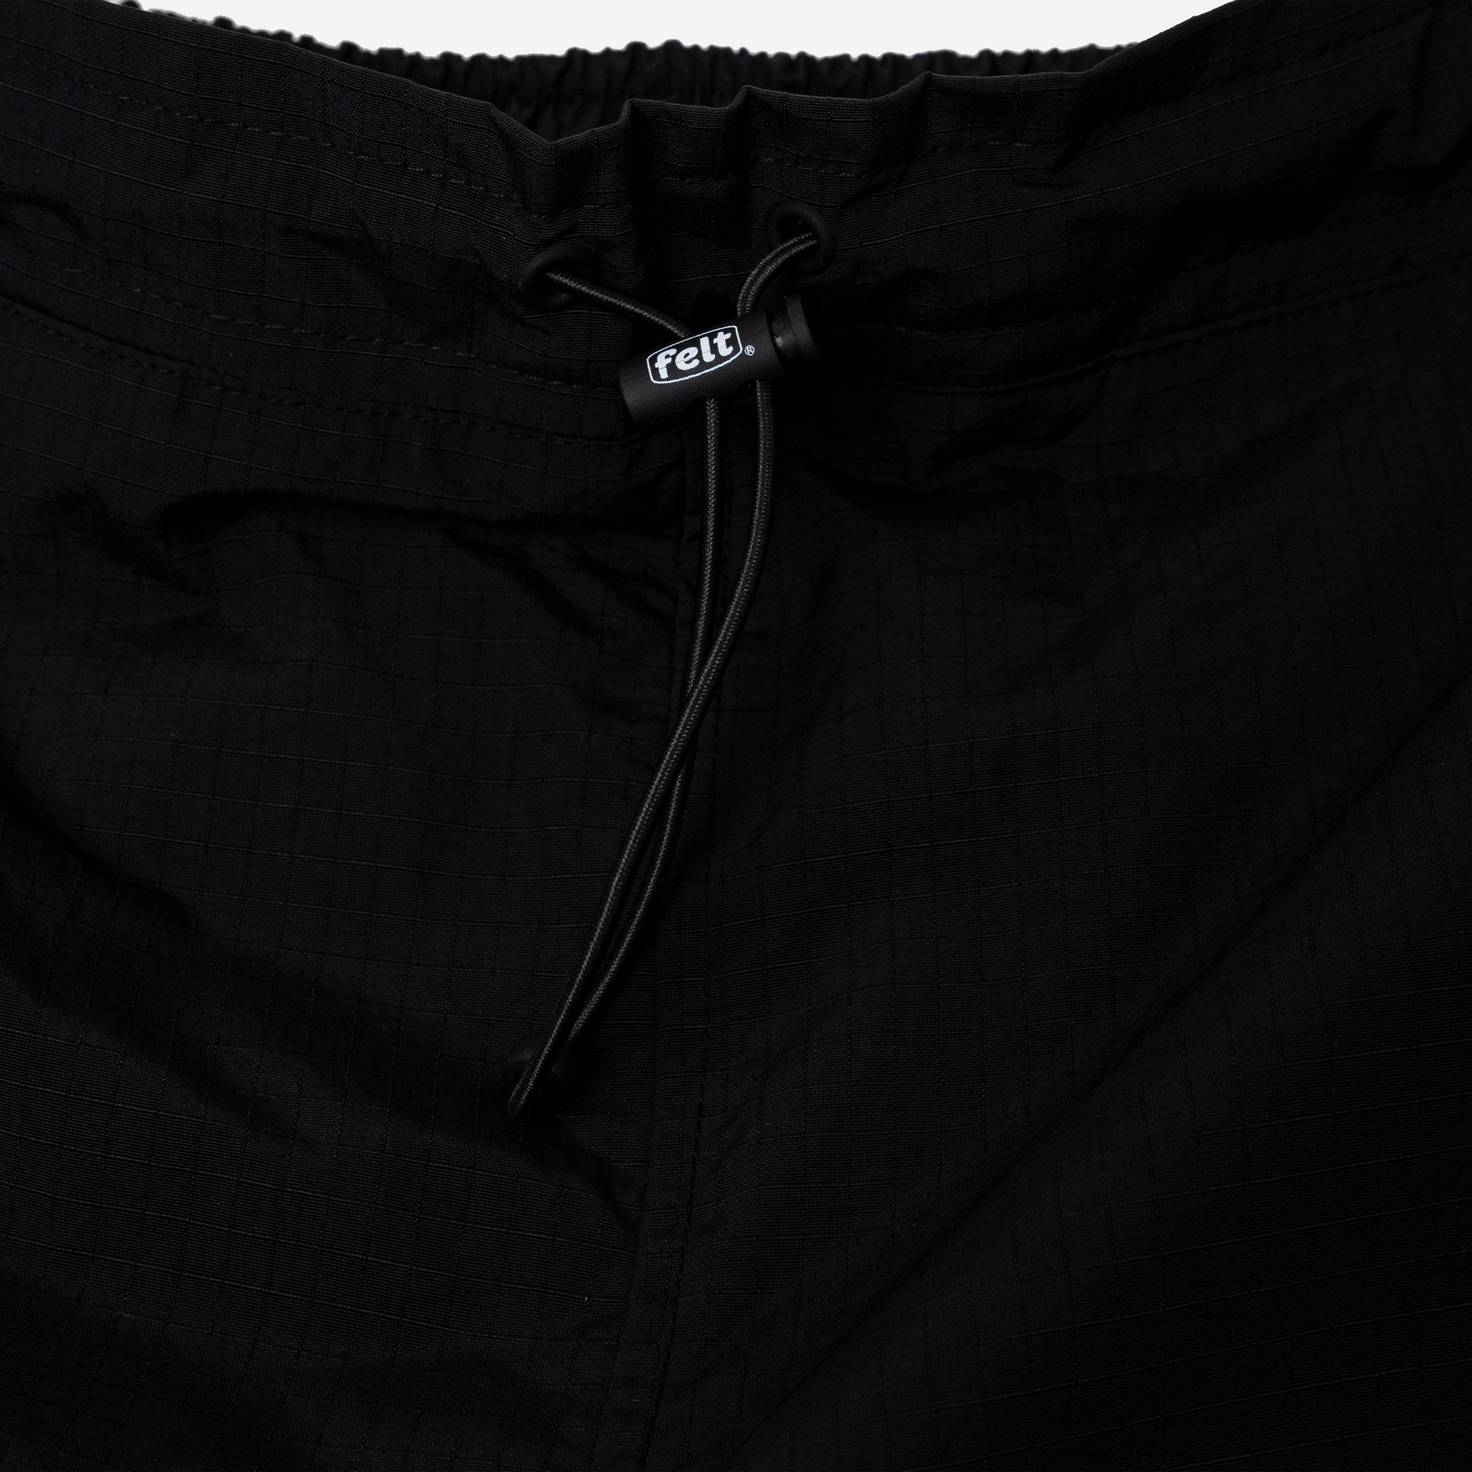 Men's Black Commuter Pants, Pants with Zip Pockets